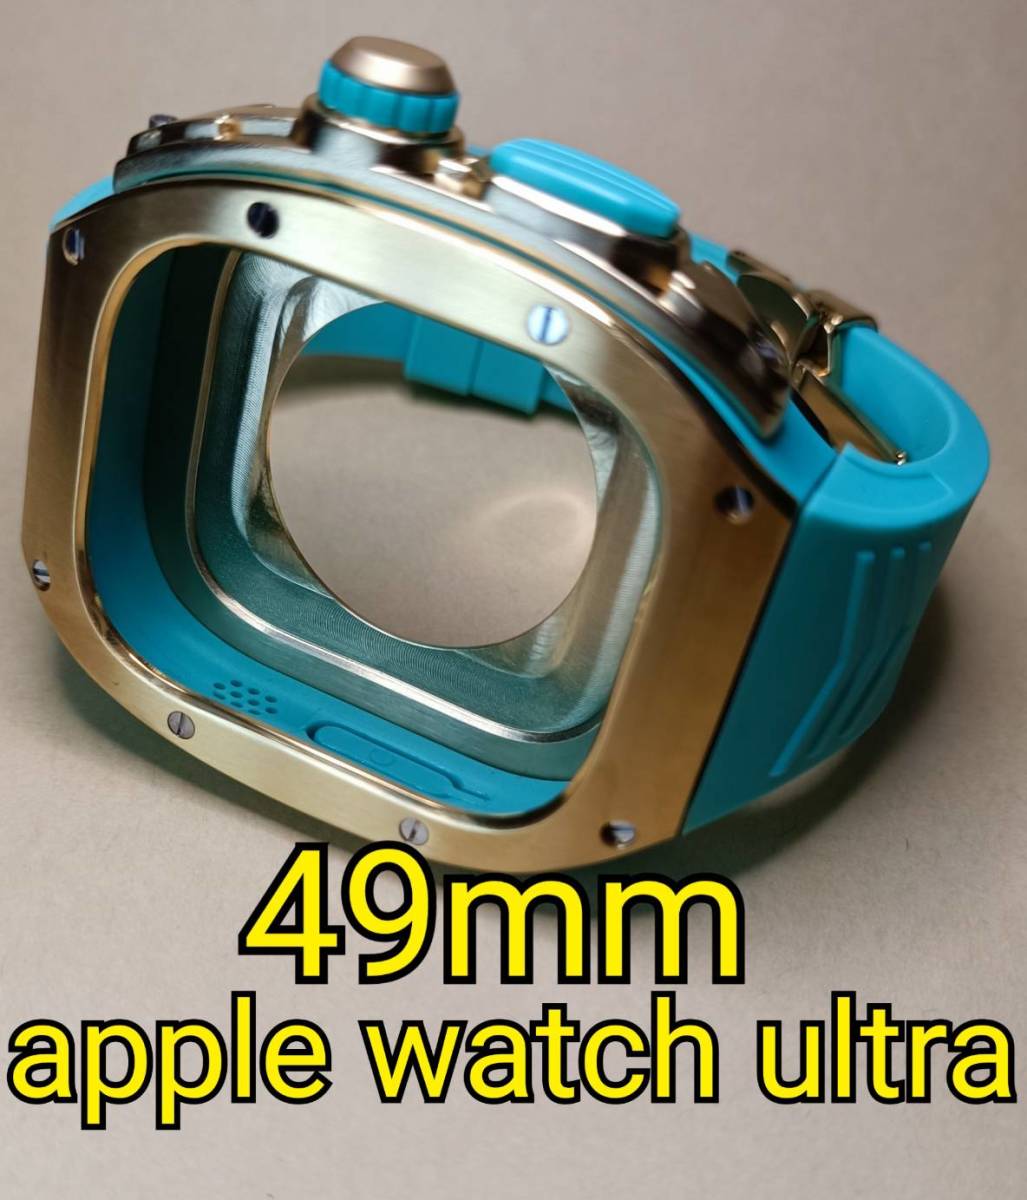 金青 ラバー 49mm apple watch ultra アップルウォッチウルトラ メタル ケース ステンレス カスタム golden concept ゴールデンコンセプト